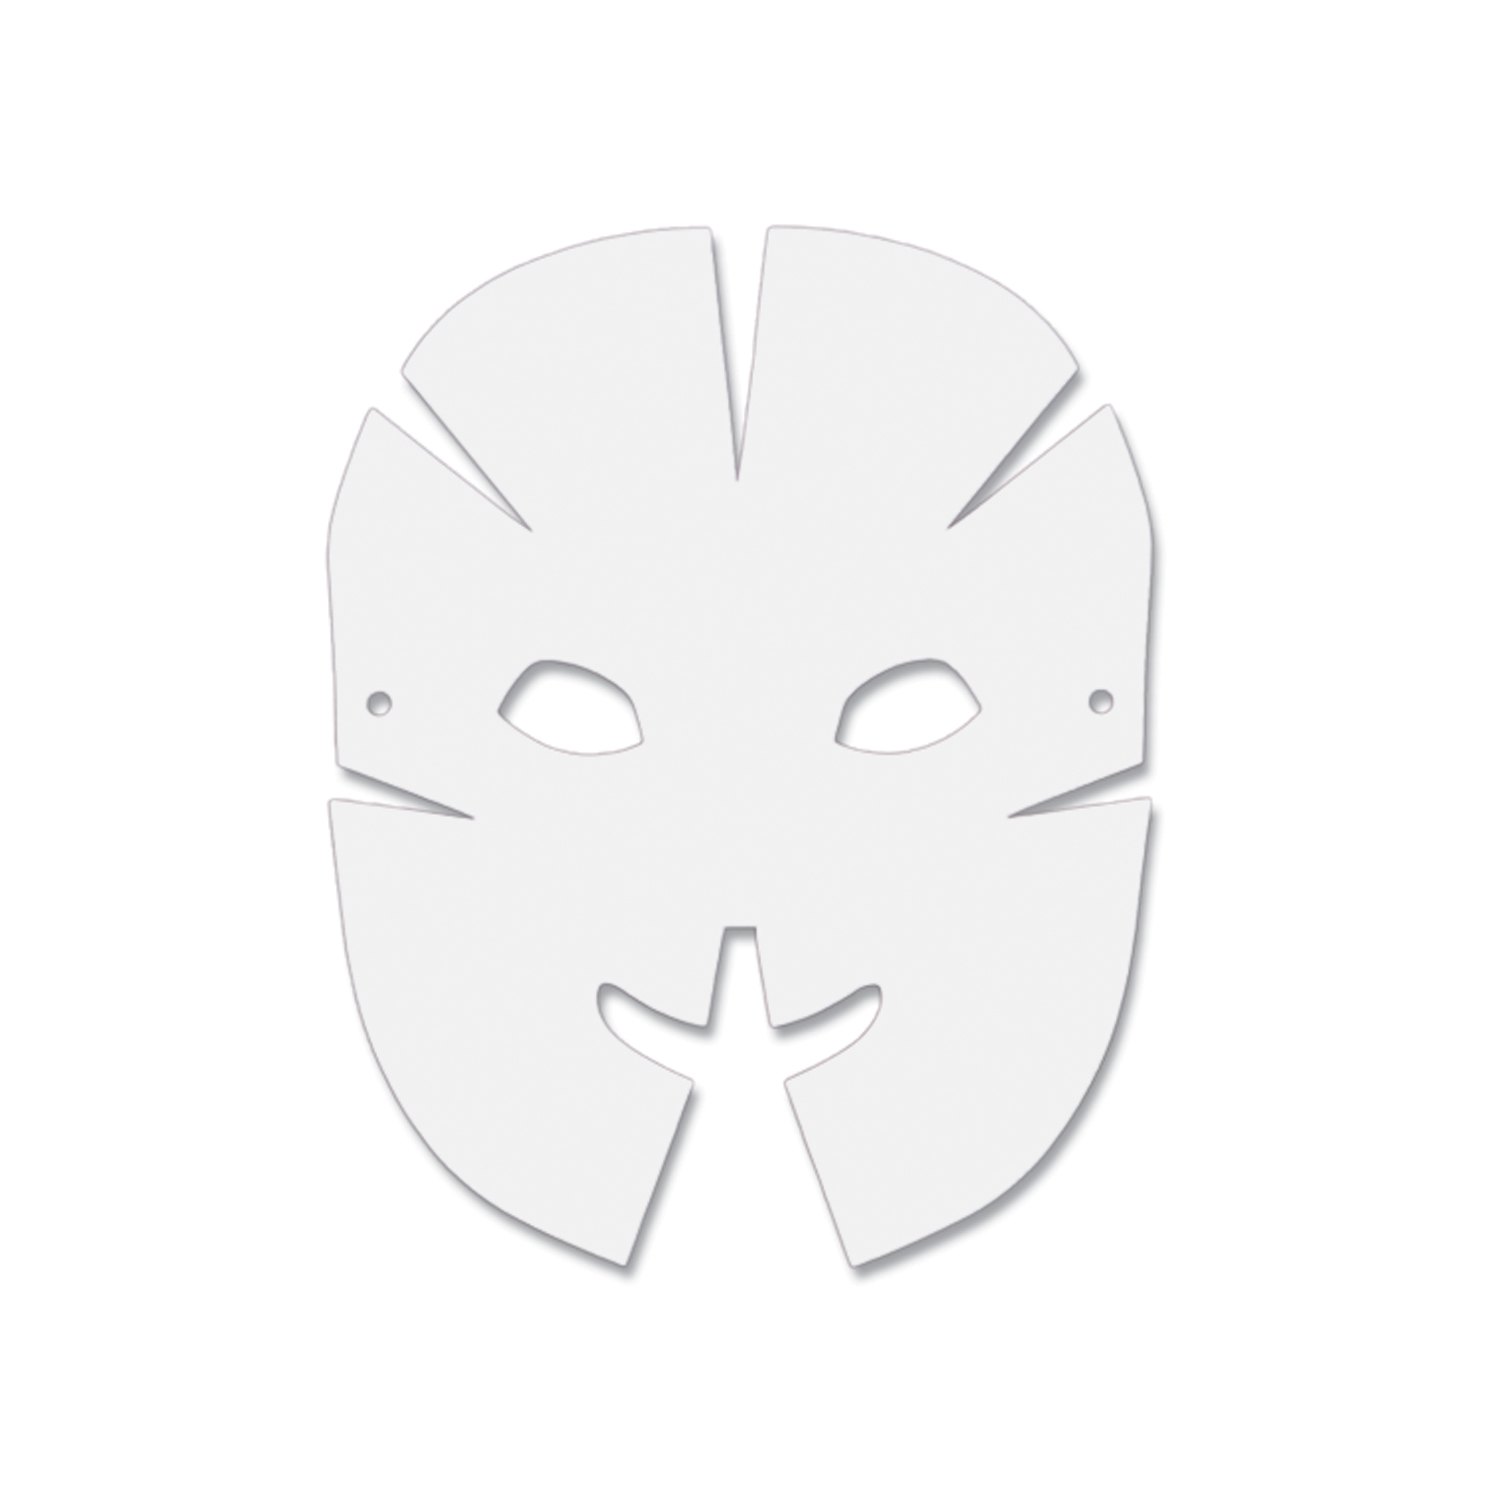 Die-Cut Dimensional Paper Masks, 10-1/2" x 8-1/4", 40 Pieces